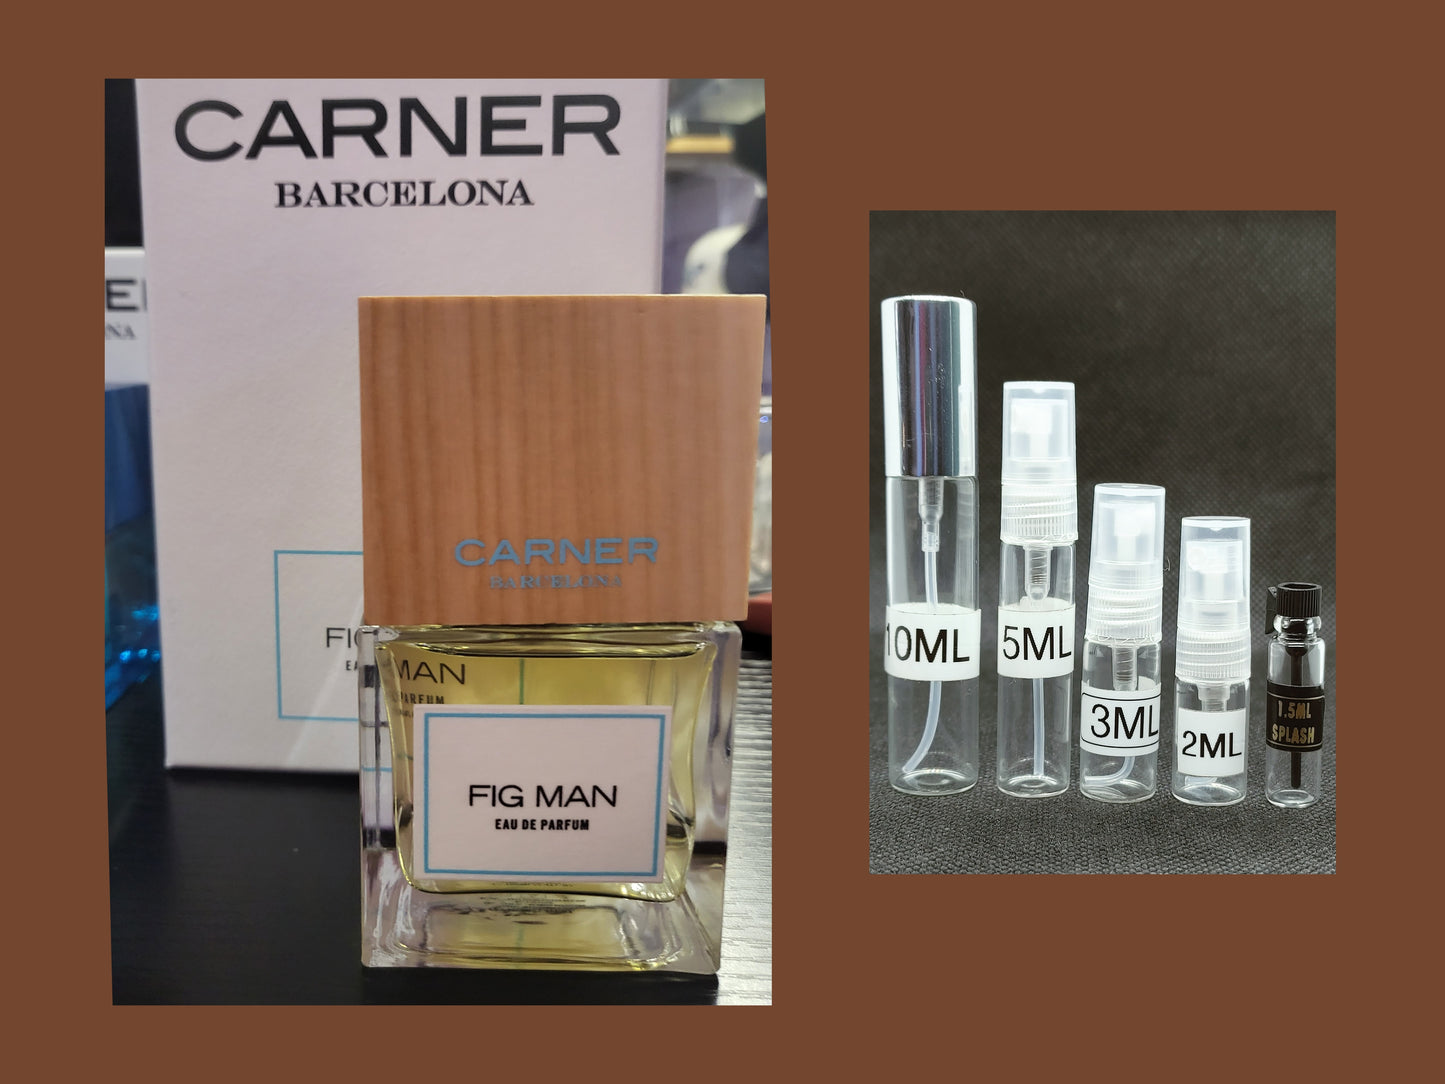 Carner Barcelona Fig Man Decants